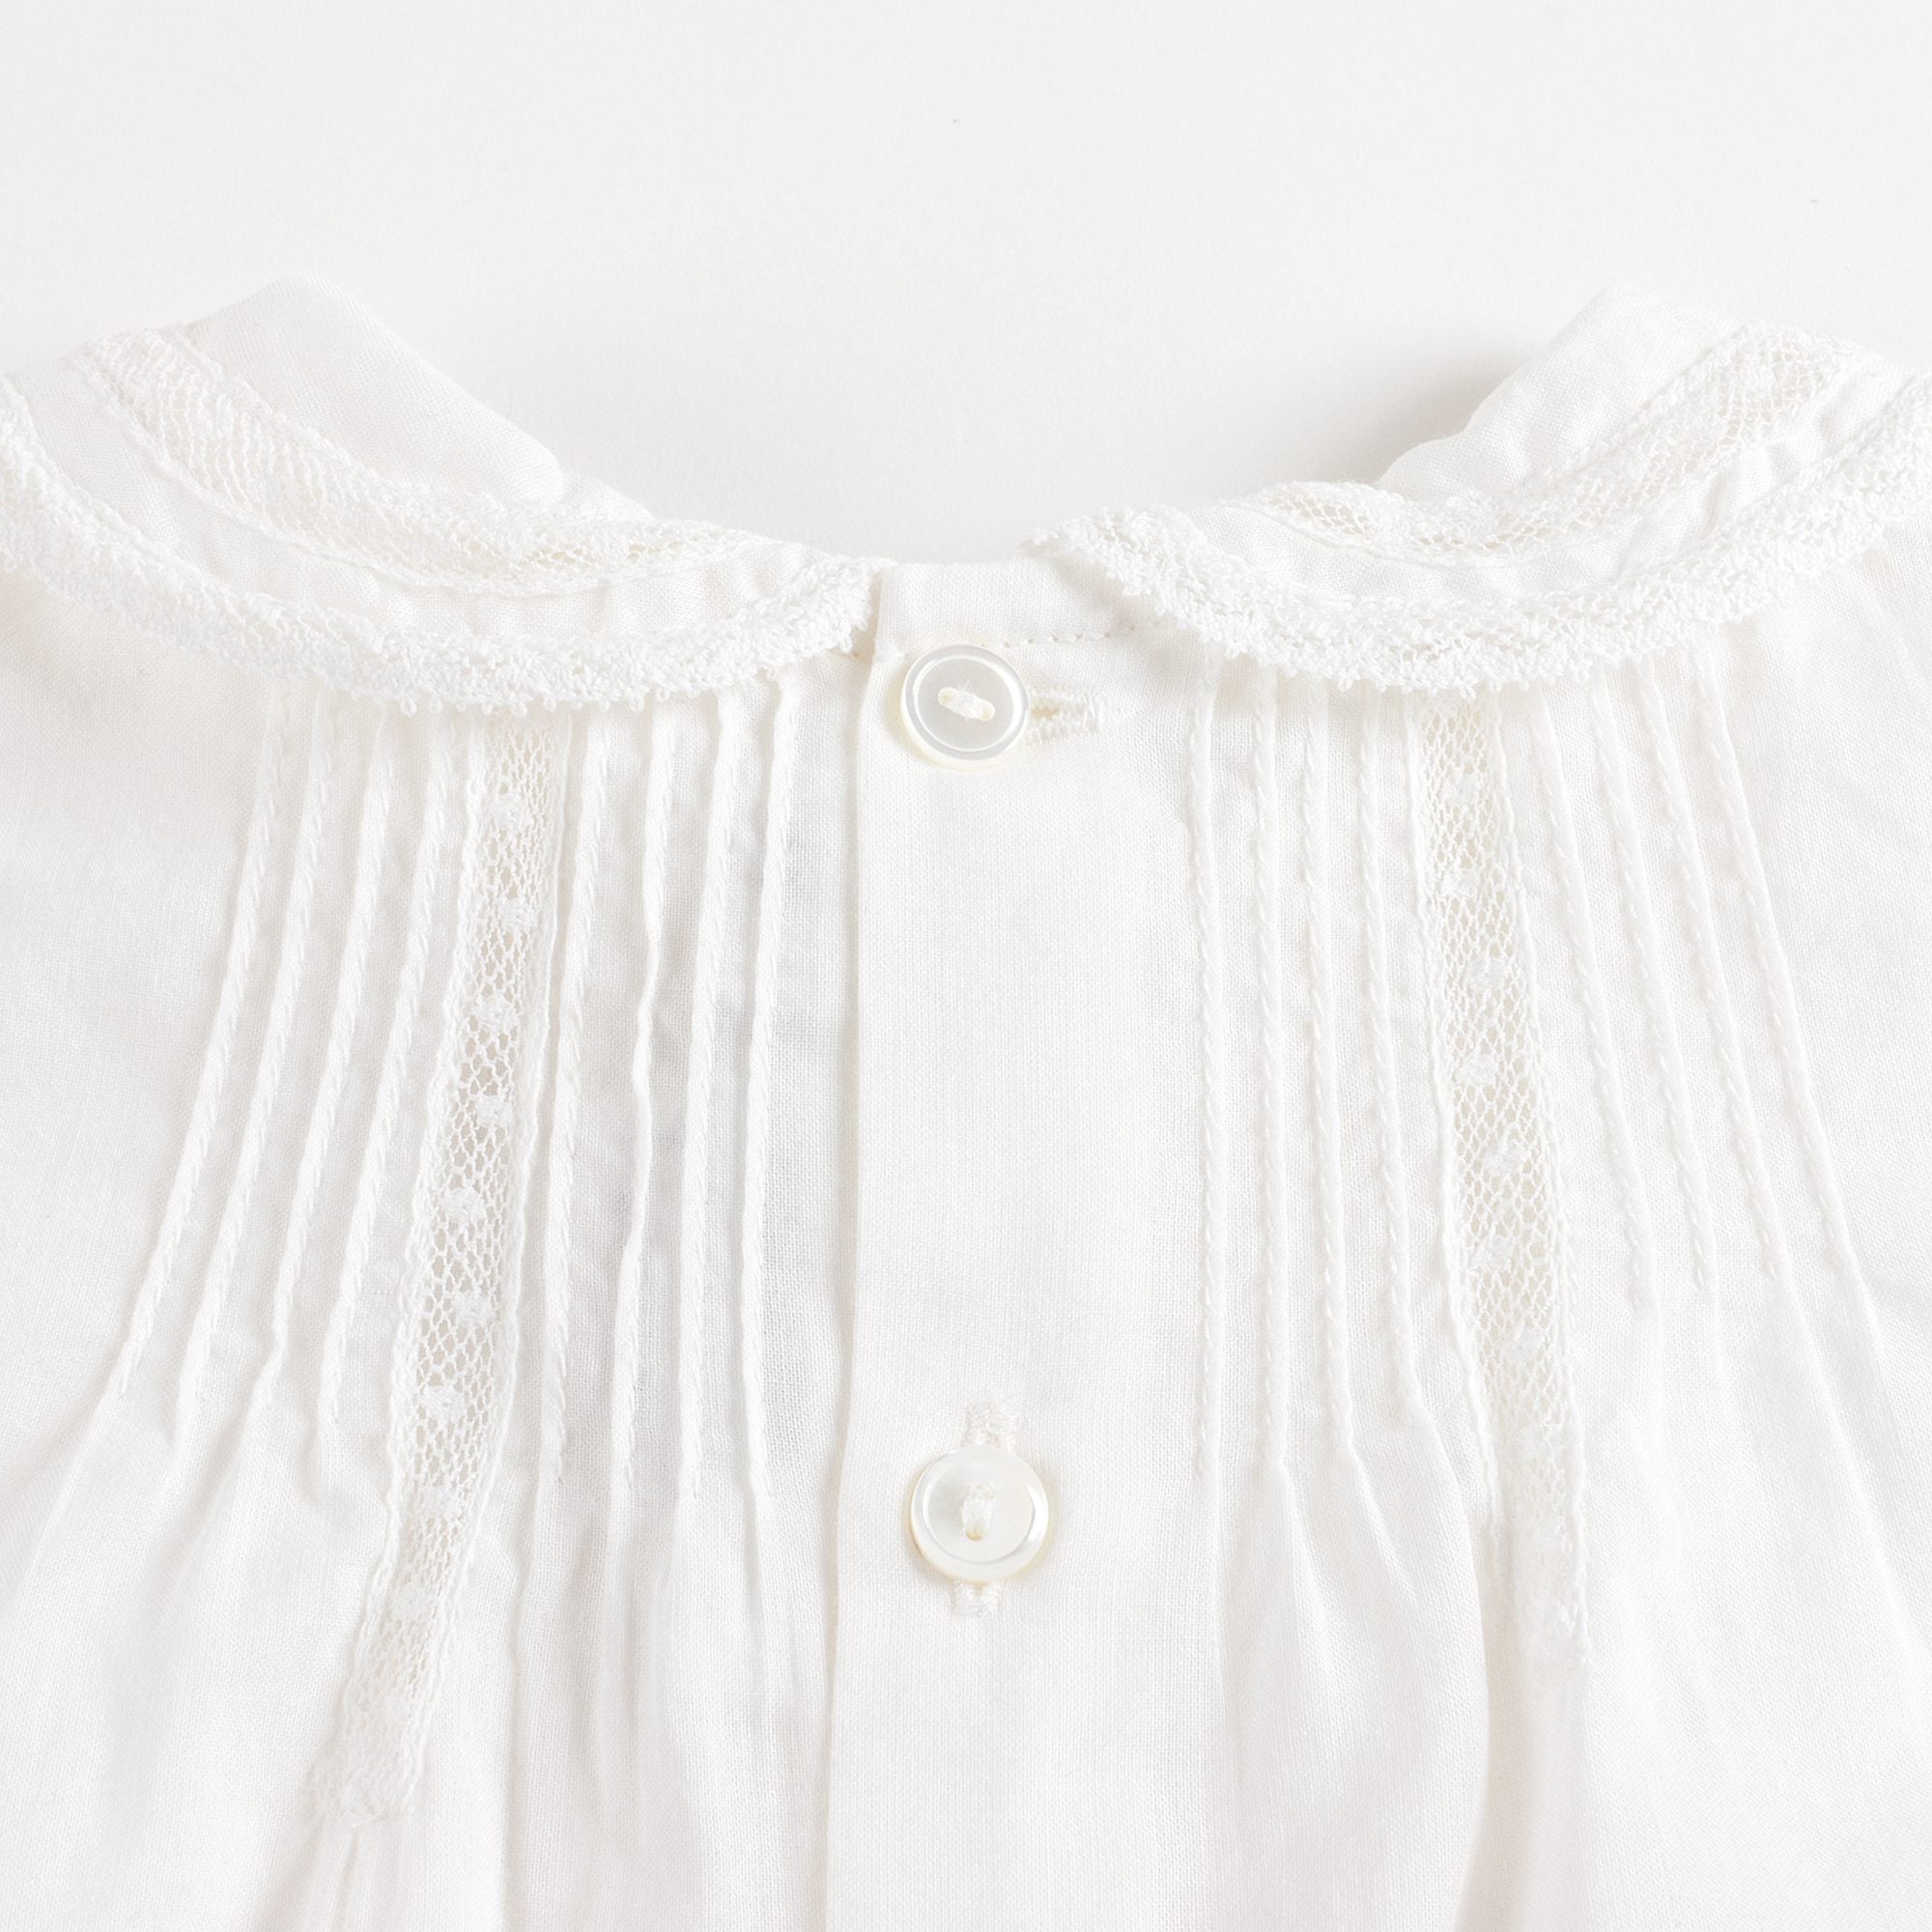 Baby Girls White Cotton Shirt